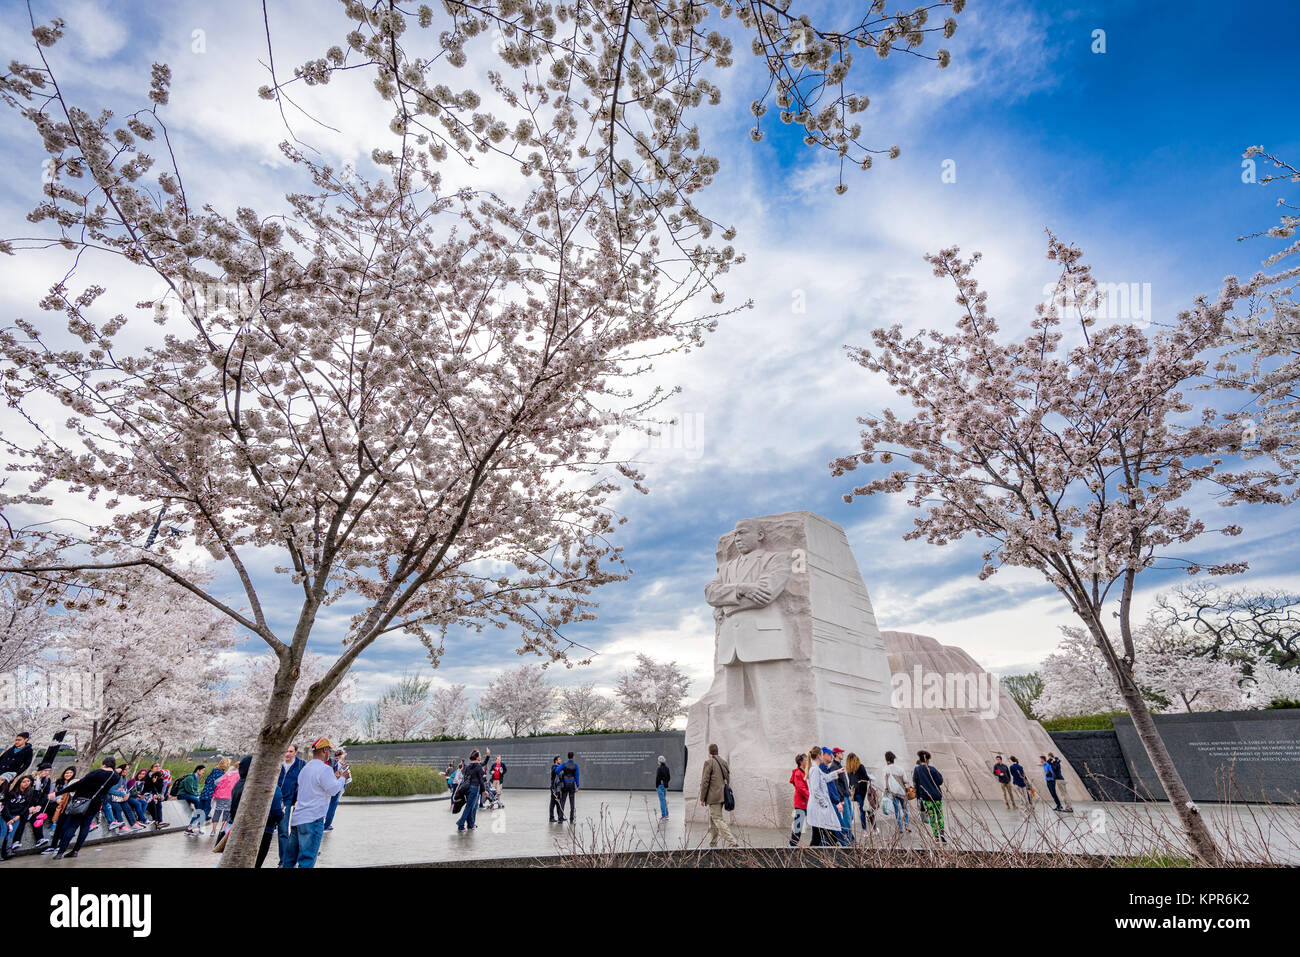 WASHINGTON - Aprile 9, 2015: il memoriale al leader dei diritti civili Martin Luther King Jr. durante la stagione primaverile in West Potomac Park. Foto Stock